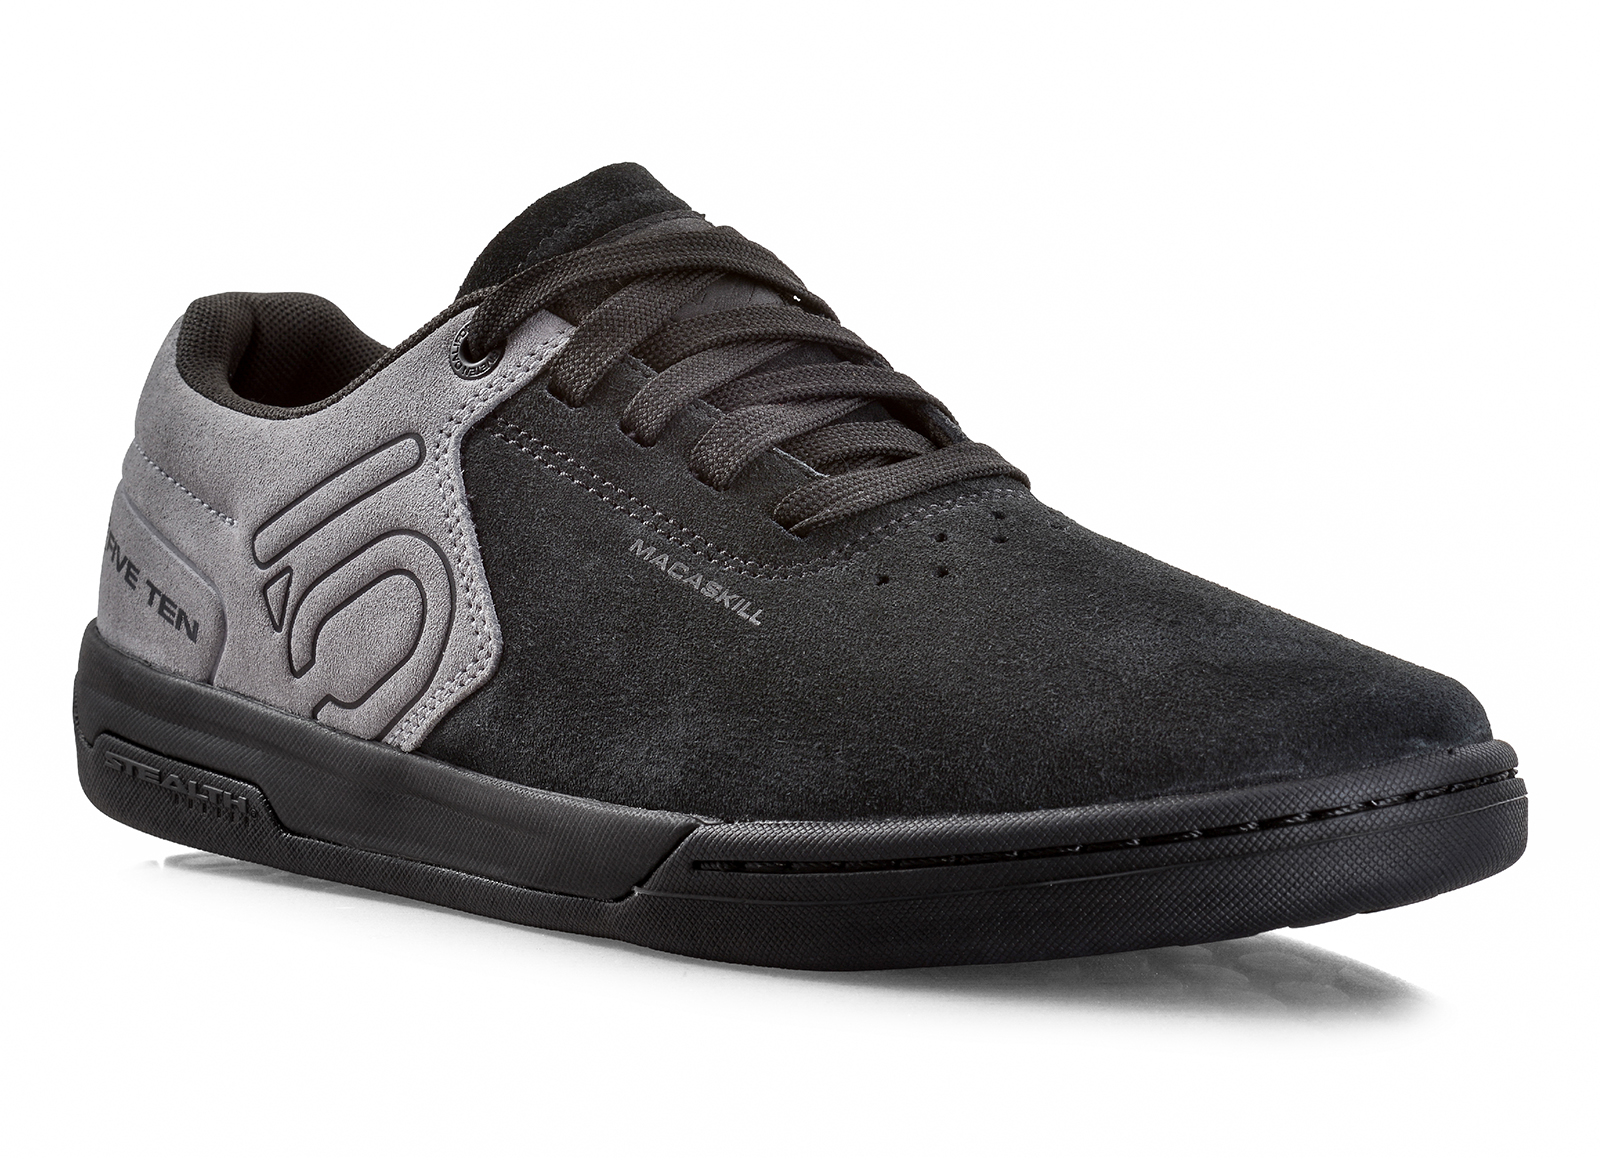 Five Ten launch Danny MacAskill's new signature shoe | MTB-MAG.COM